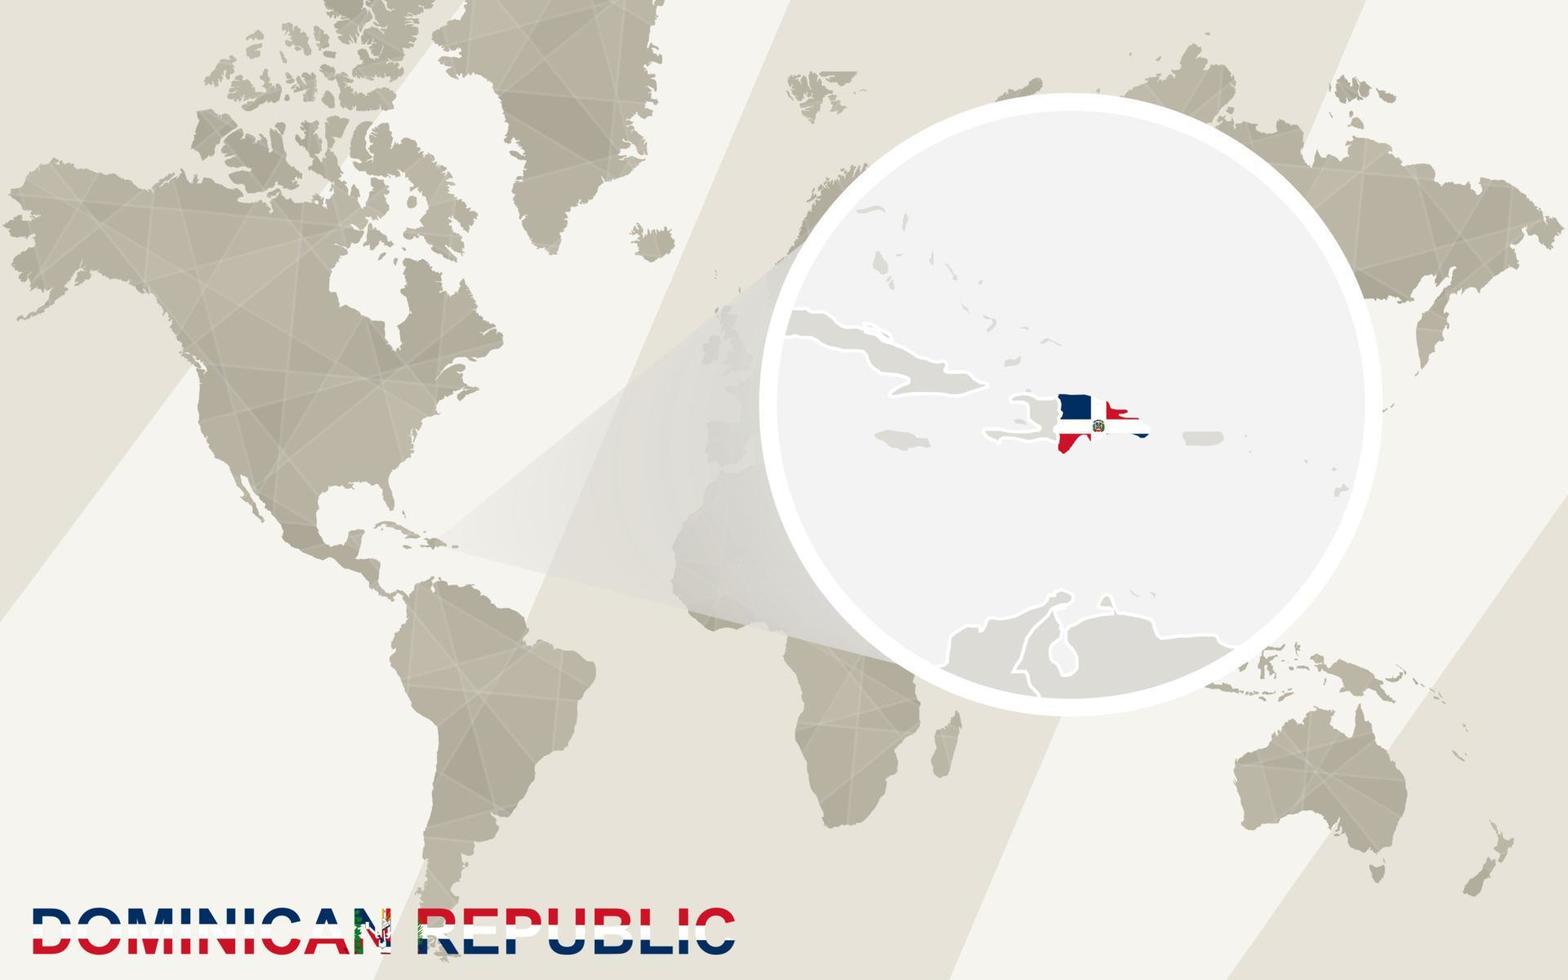 ingrandisci la mappa e la bandiera della repubblica dominicana. mappa del mondo. vettore